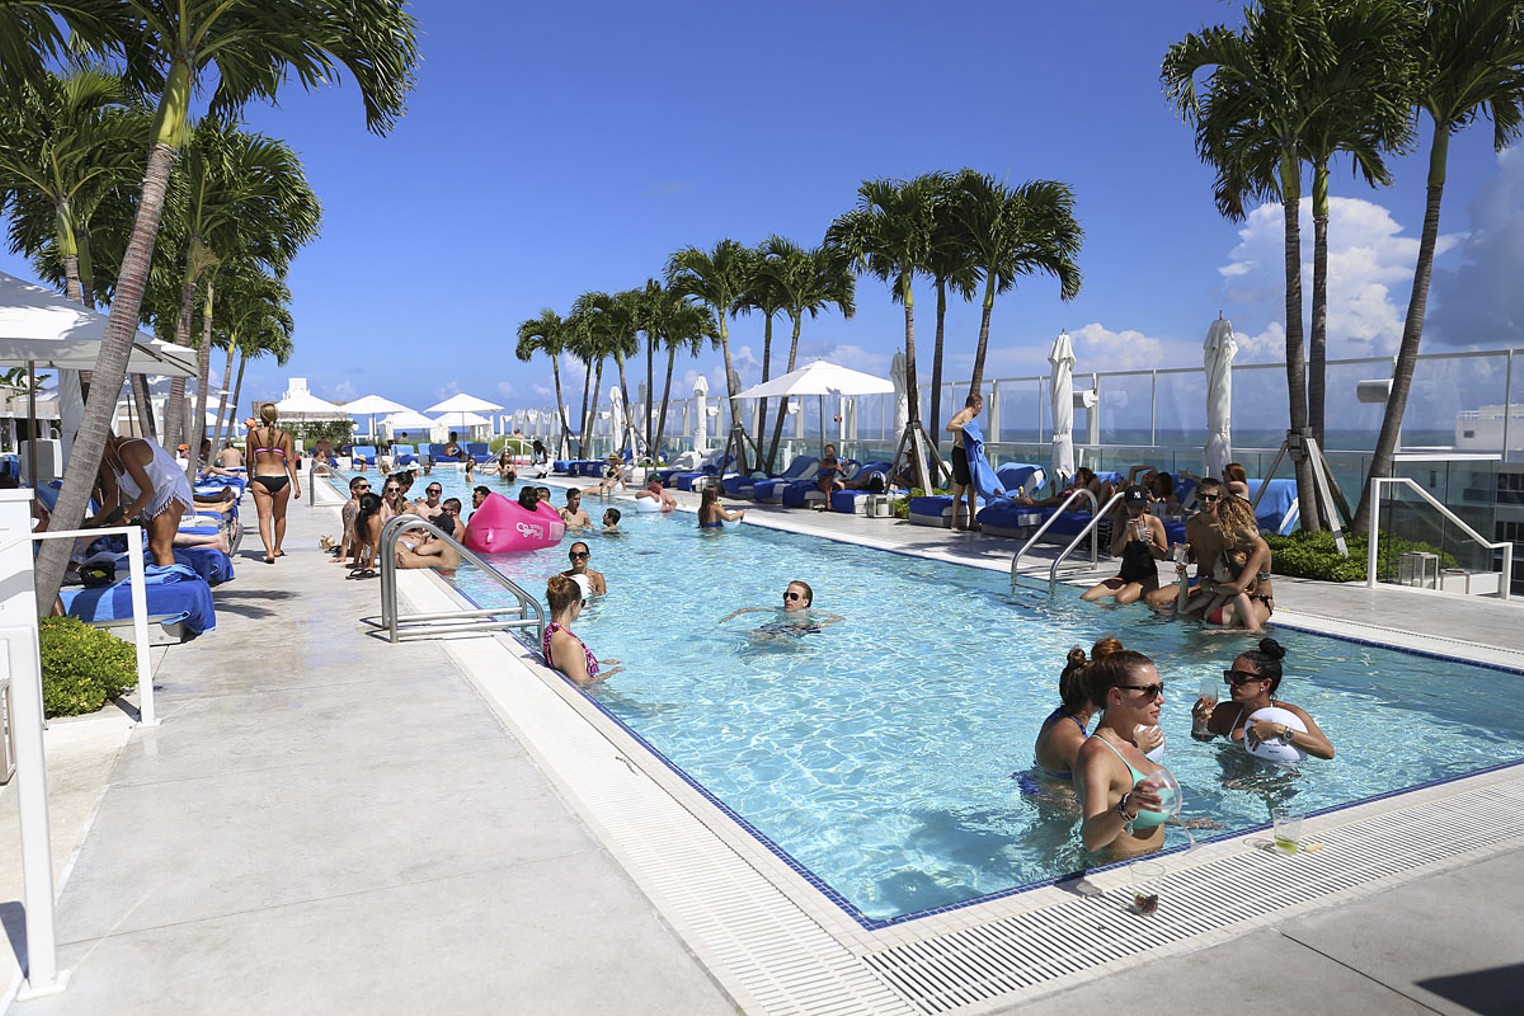 Ten Best Pool Party Spots in Miami 2022